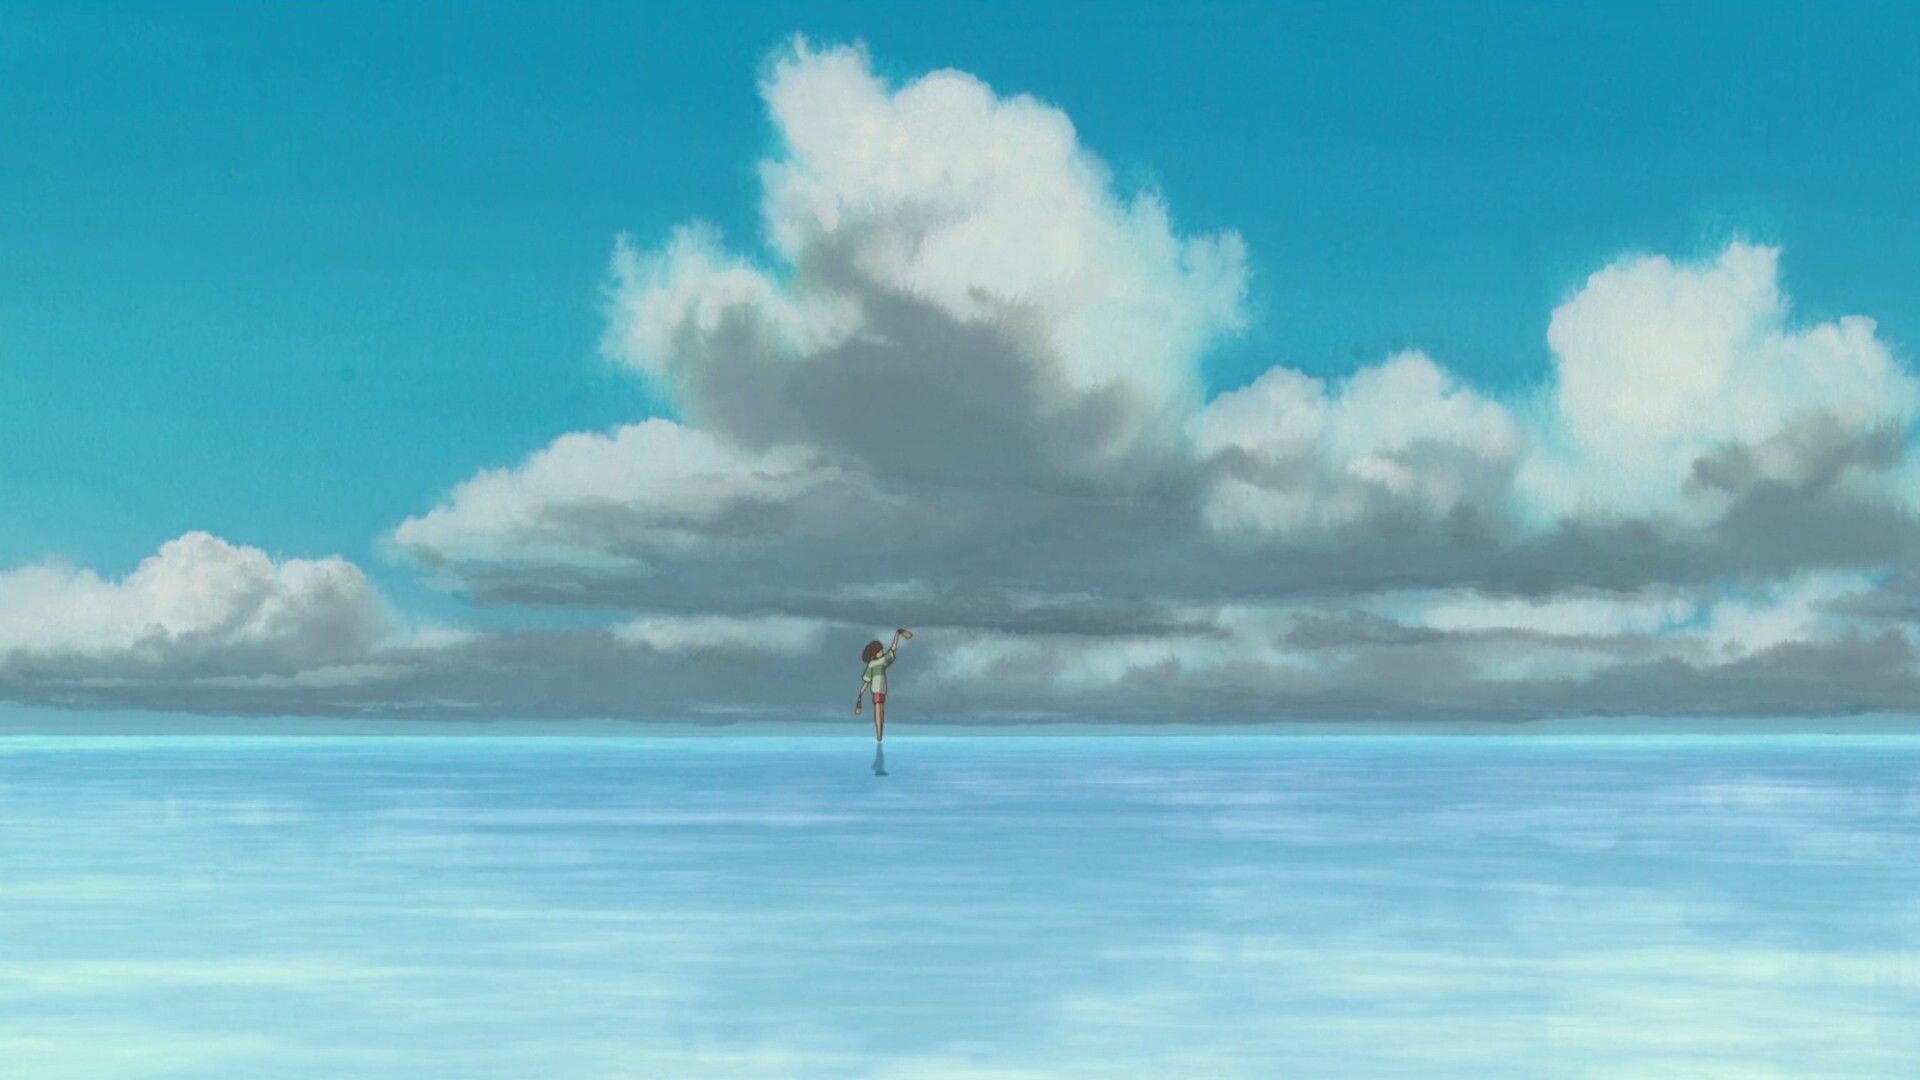 Studio Ghibli: Spirited Away, Chihiro Ogino voiced by Rumi Hiiragi. 1920x1080 Full HD Background.